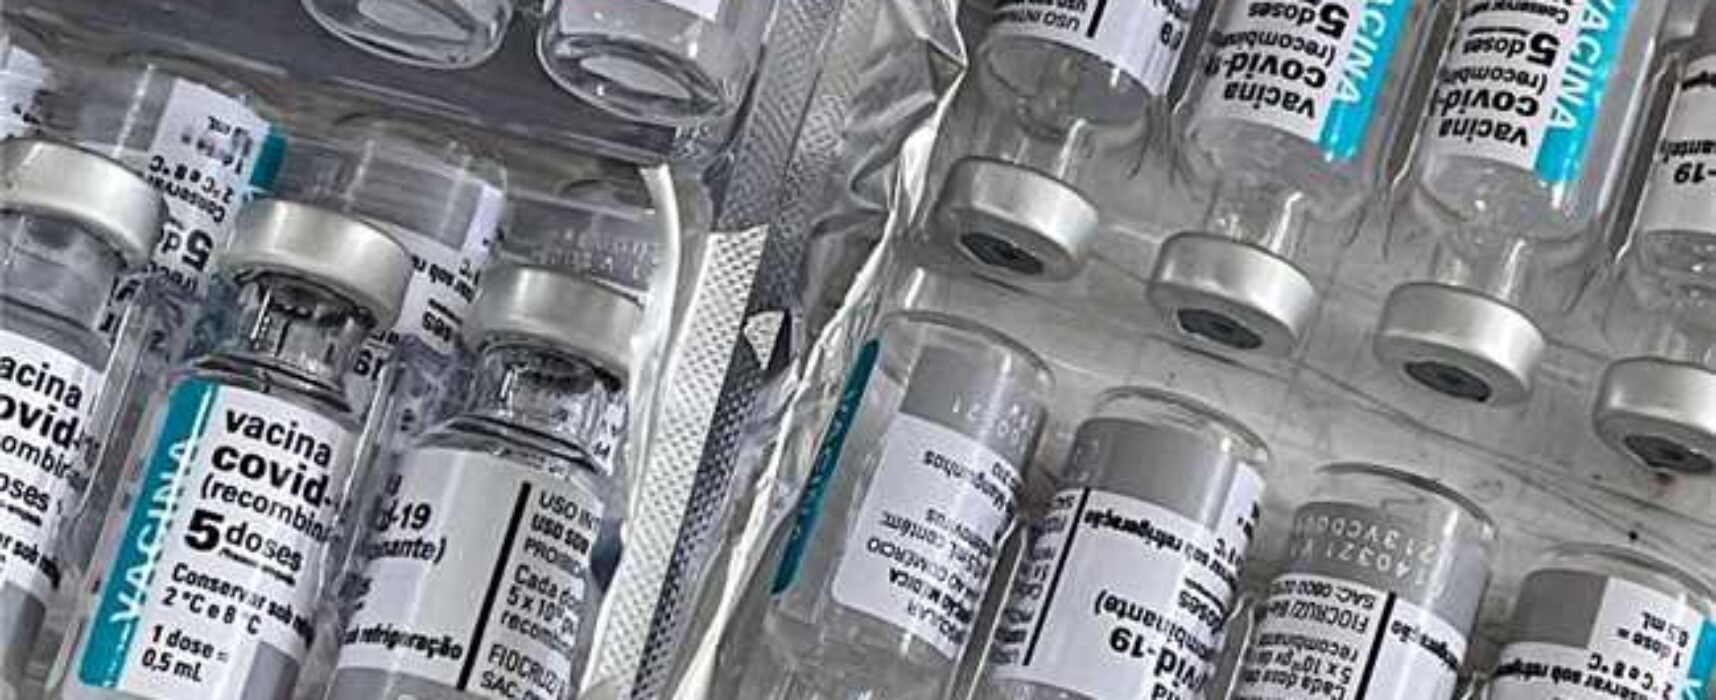 Sesau informa sobre aplicação da 2ª dose da CoronaVac em Ilhéus